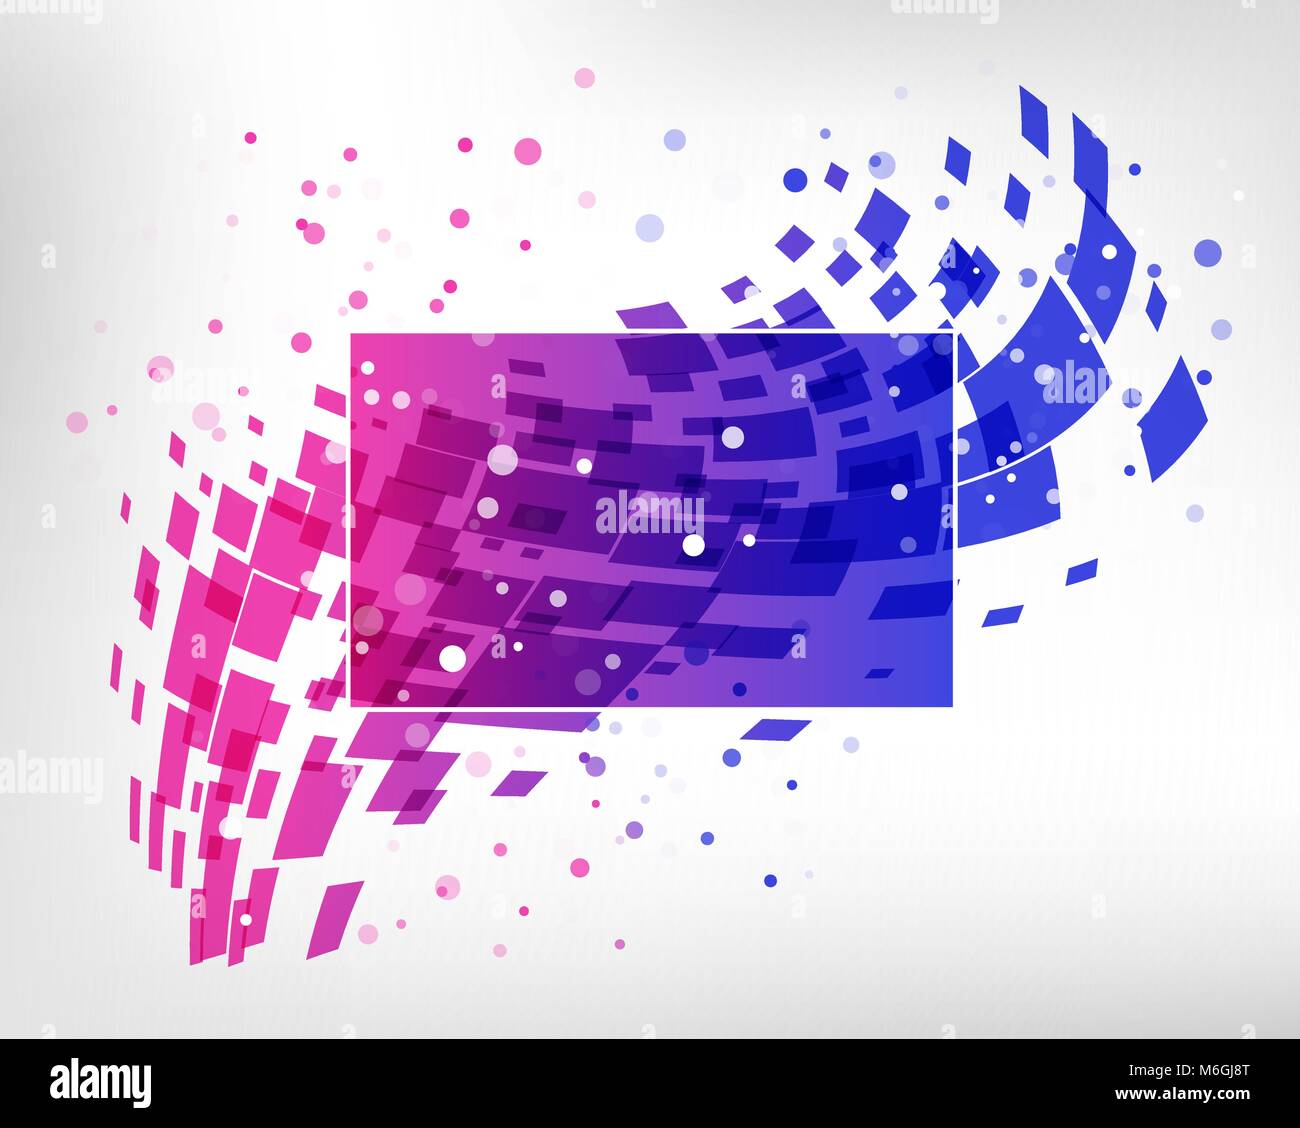 Abstract colorful business design, géométrique de l'élément de démarrage, violet et rose sur fond blanc card Illustration de Vecteur